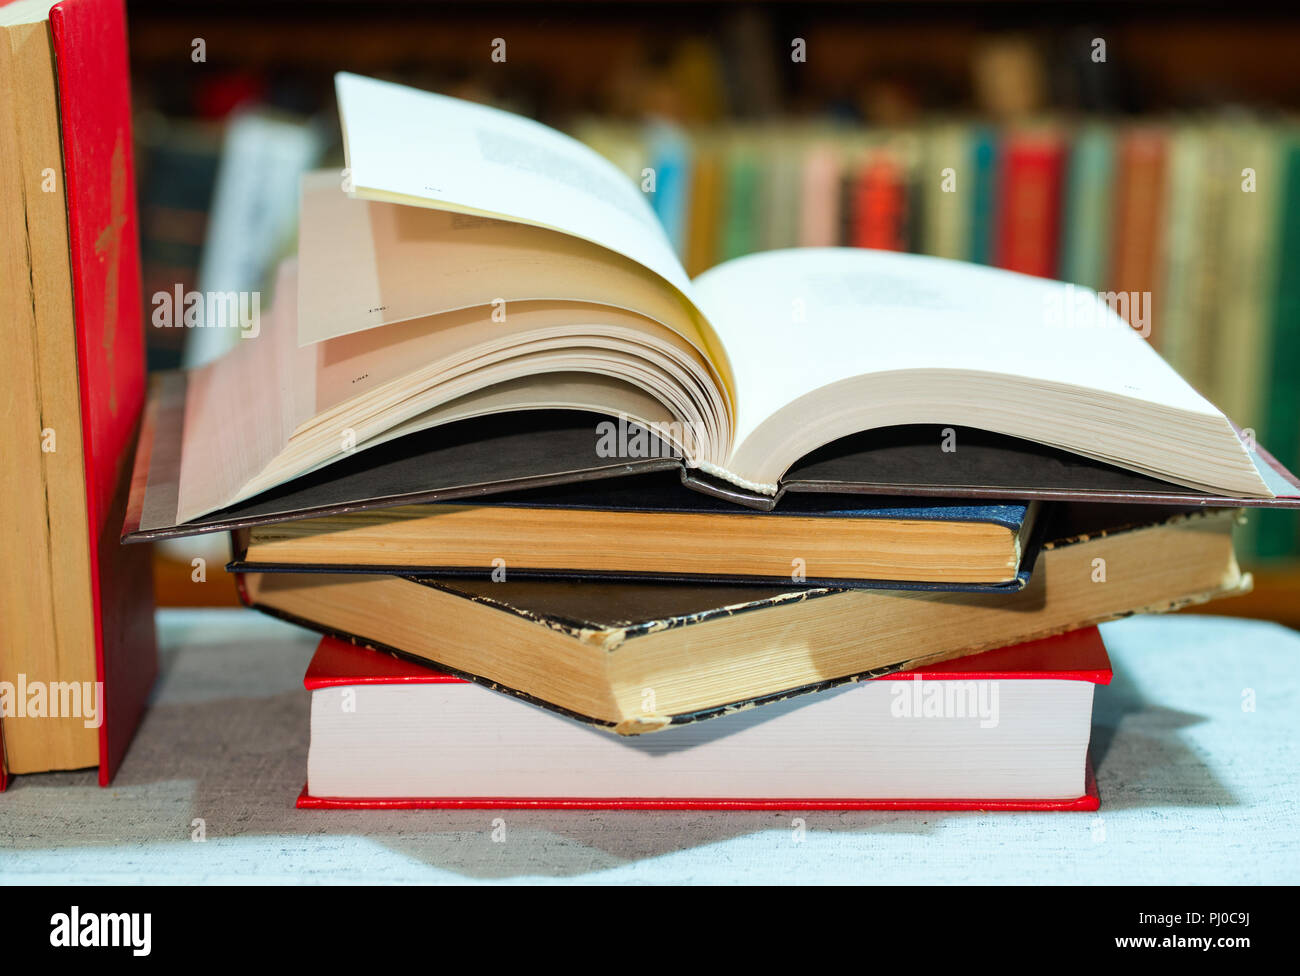 Libro Abierto, pila de libros de tapa dura en la mesa. Vista desde arriba. Foto de stock